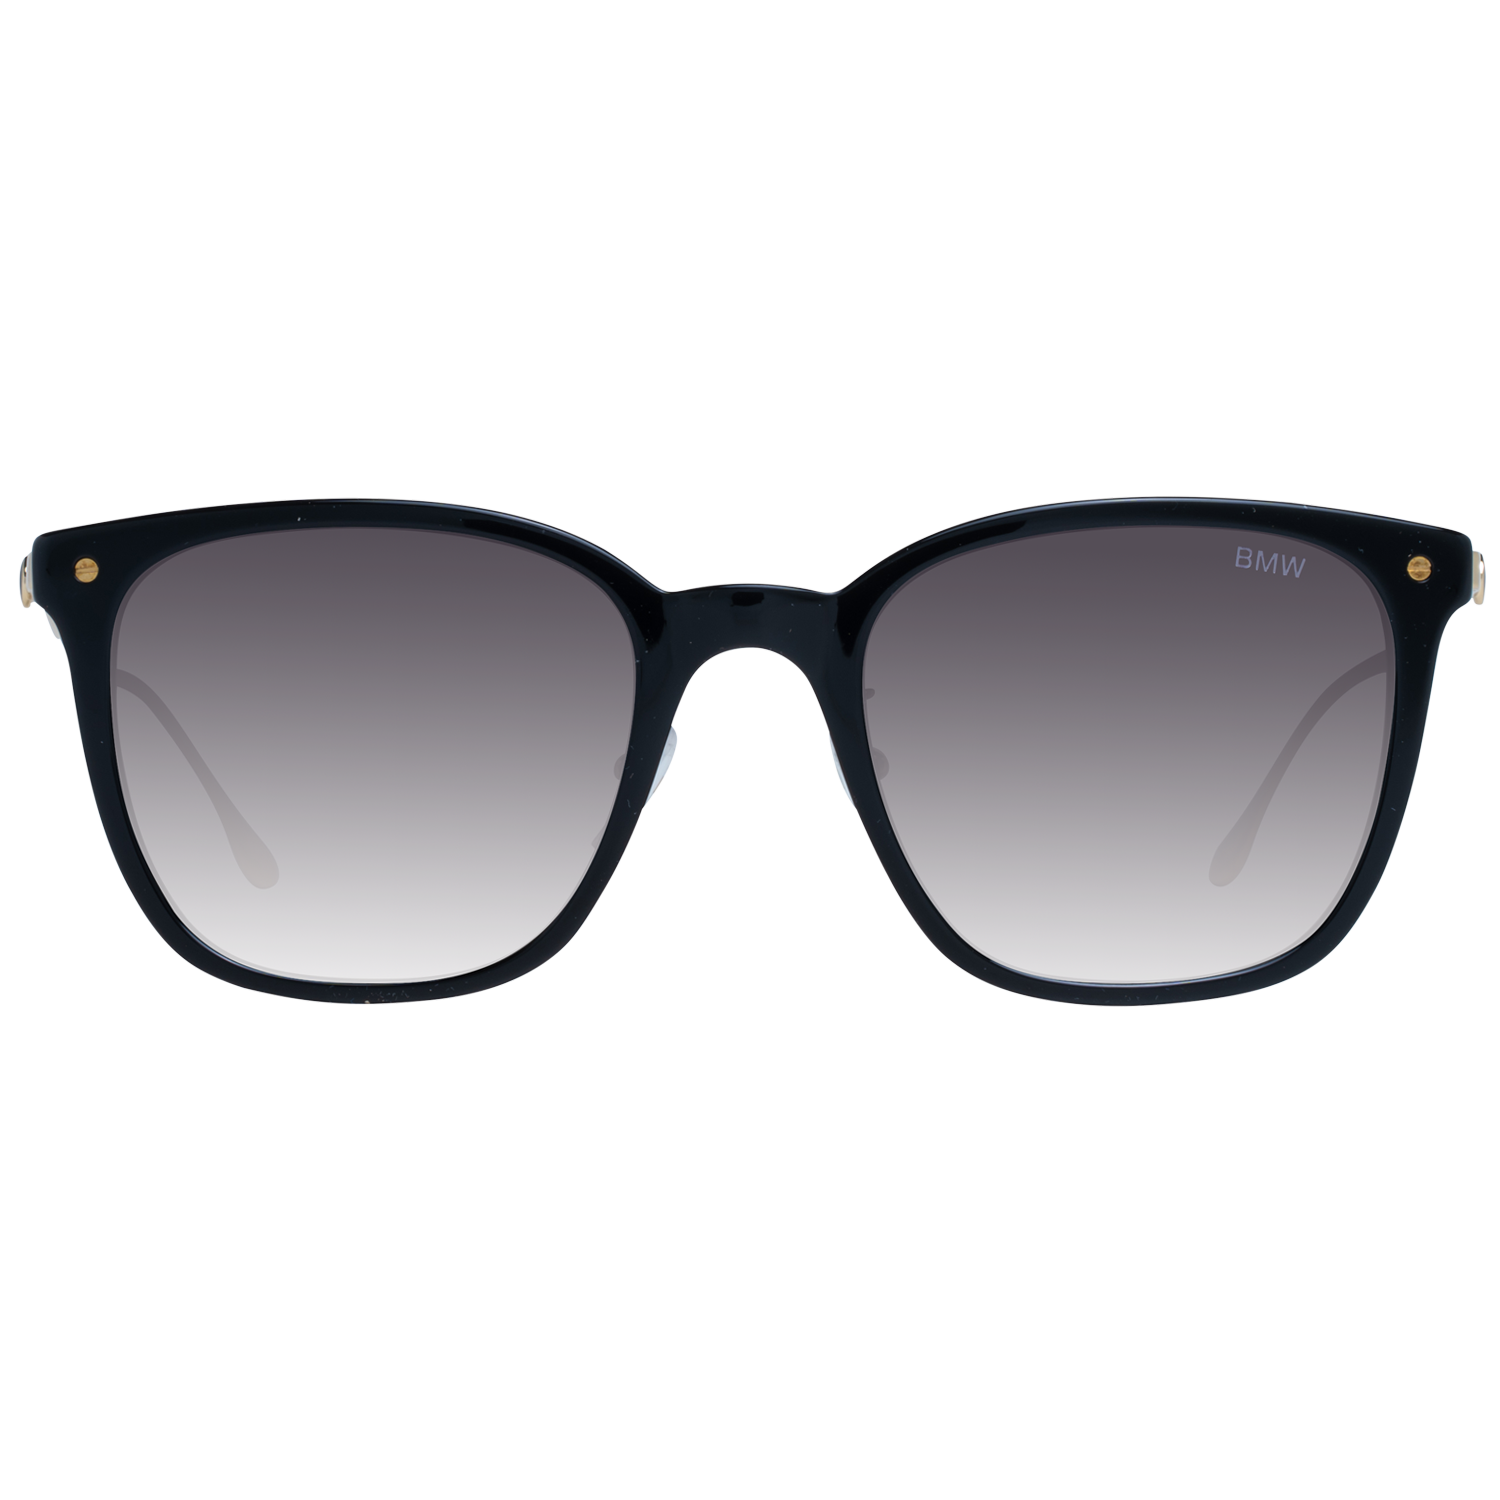 BMW Sunglasses BMW Sunglasses BW0008 01B 55 Eyeglasses Eyewear UK USA Australia 